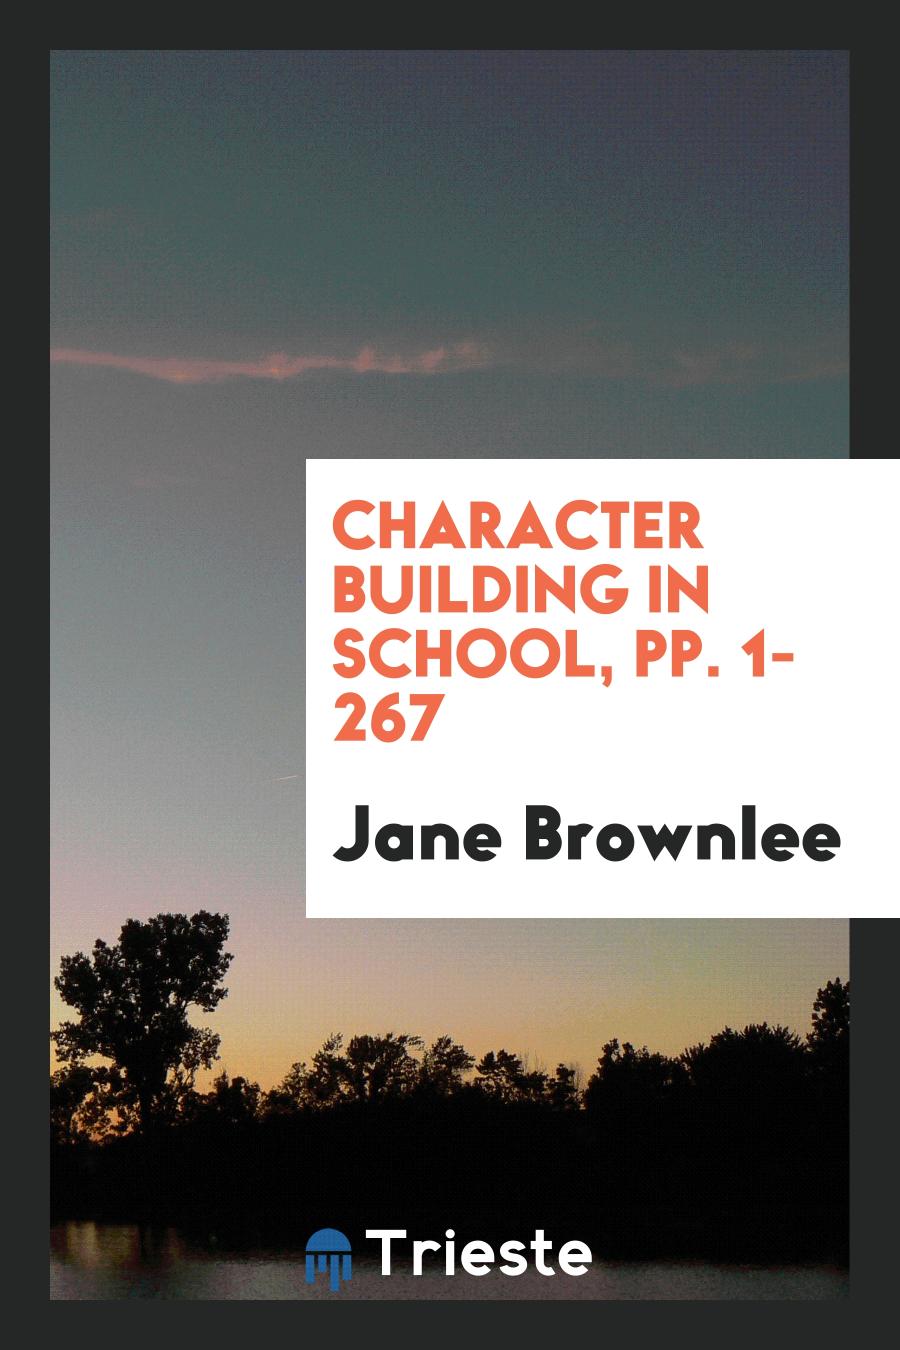 Character Building in School, pp. 1-267